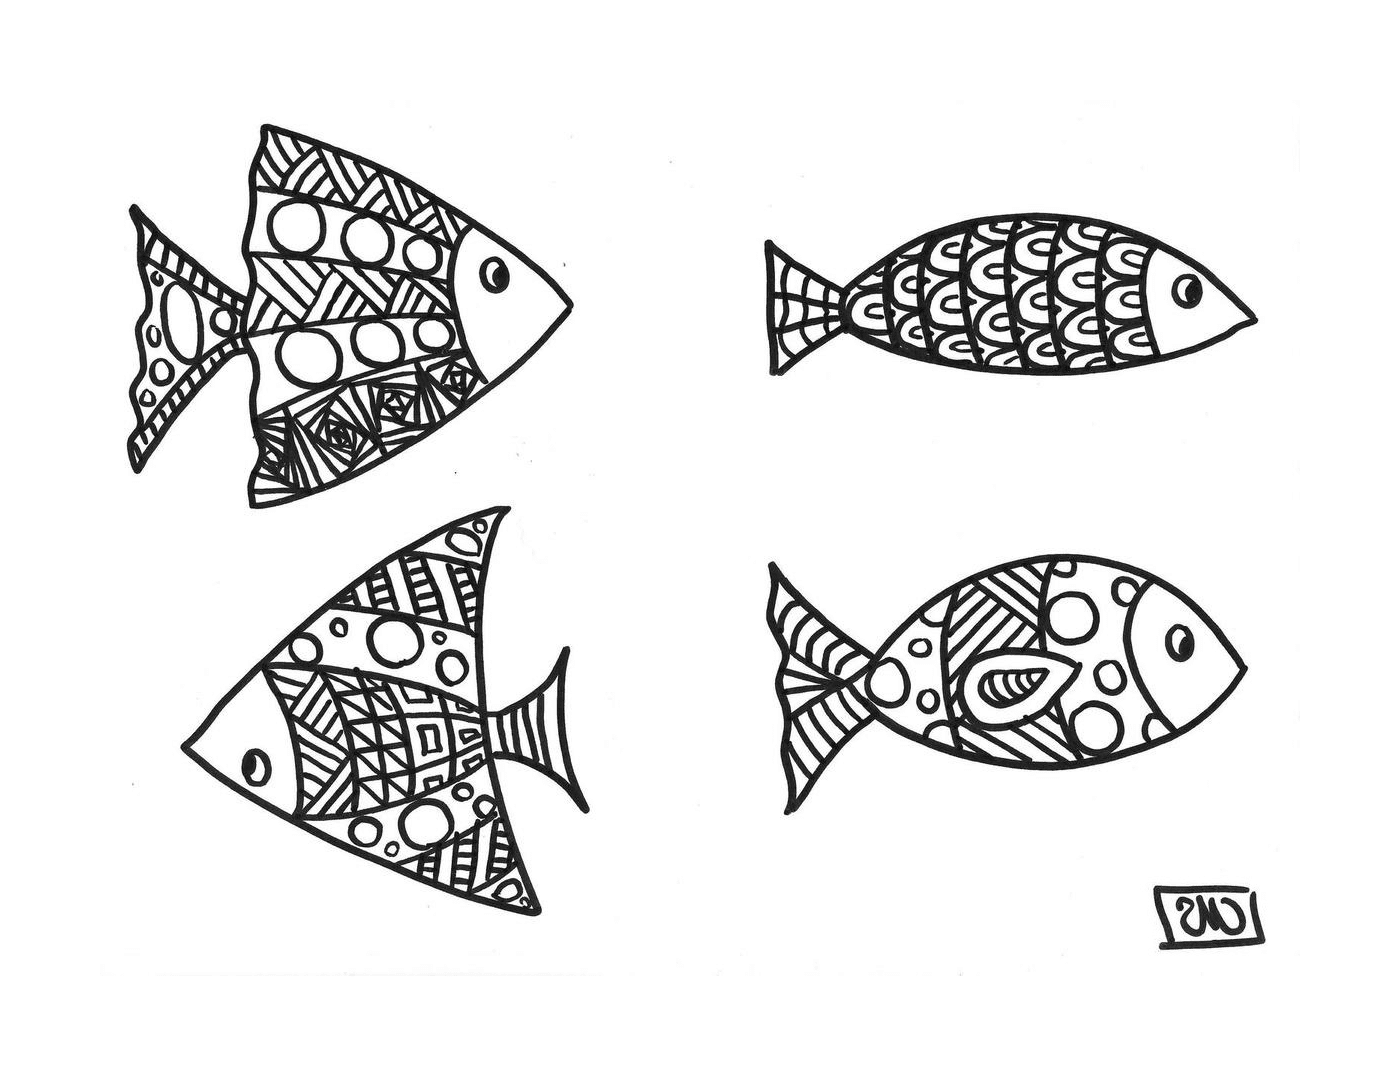  Четыре рыбы с уникальными образцами 